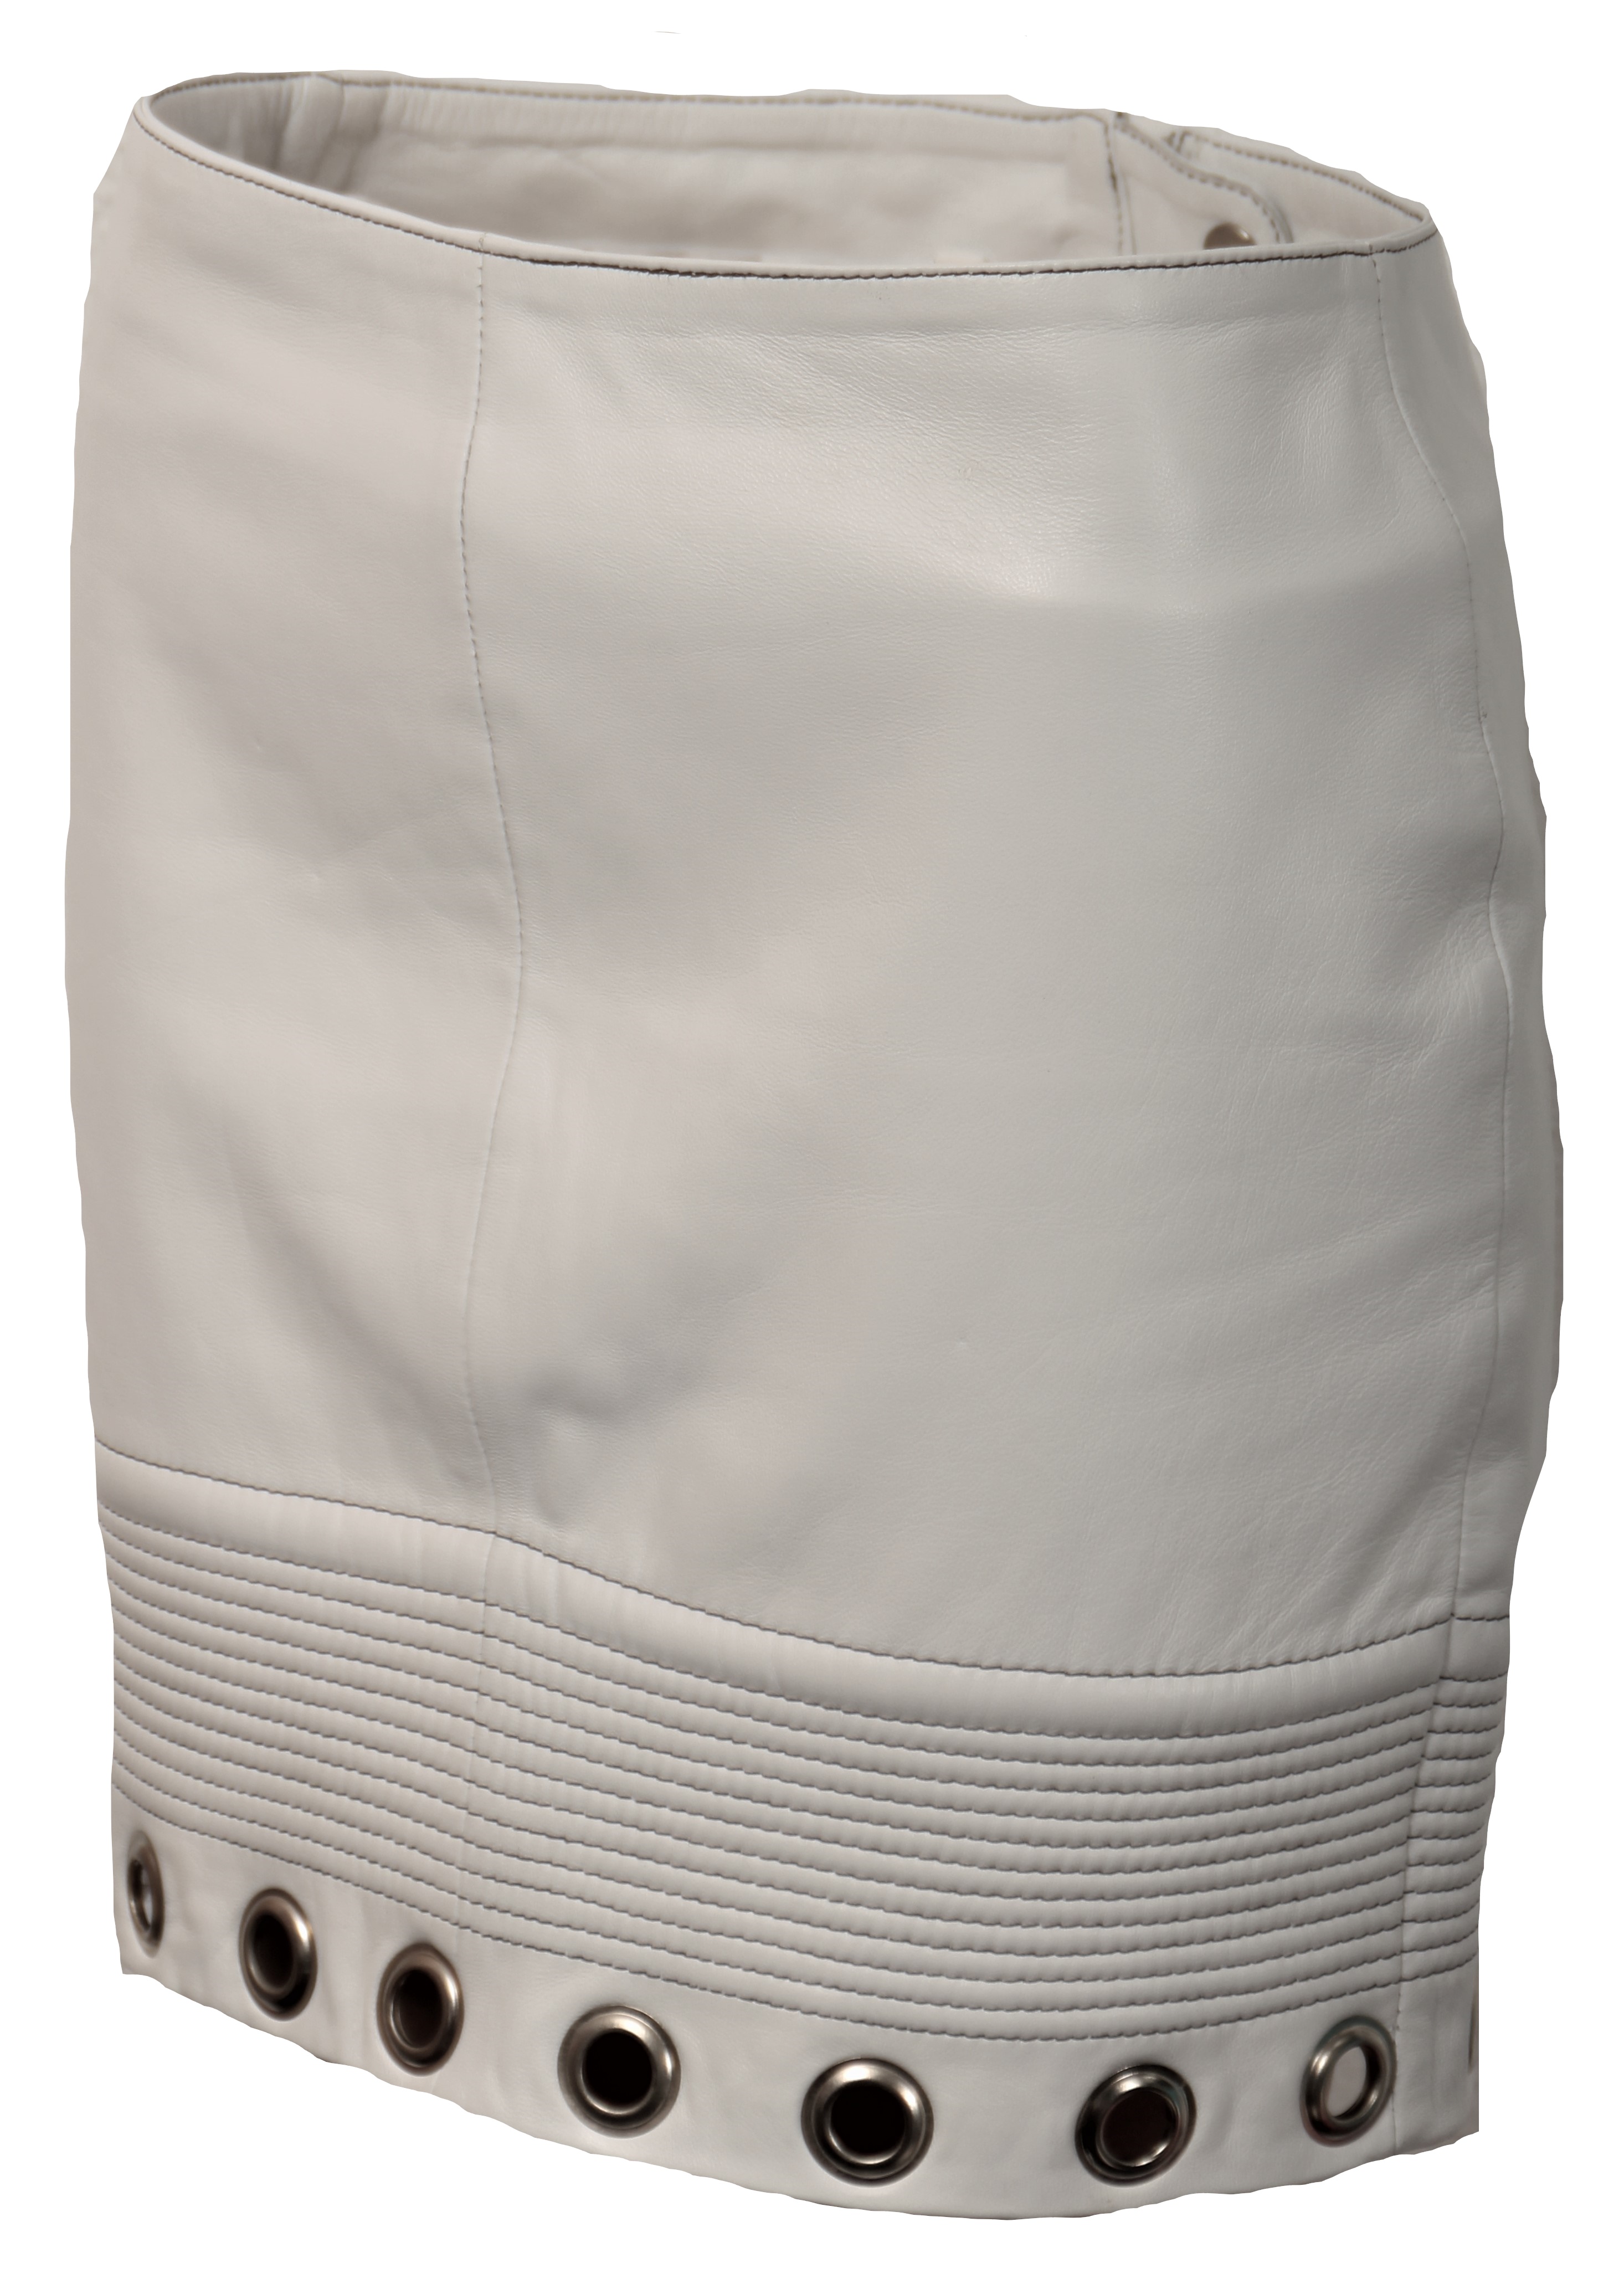 Falda de cuero AUTENTICO, color blanco con remaches